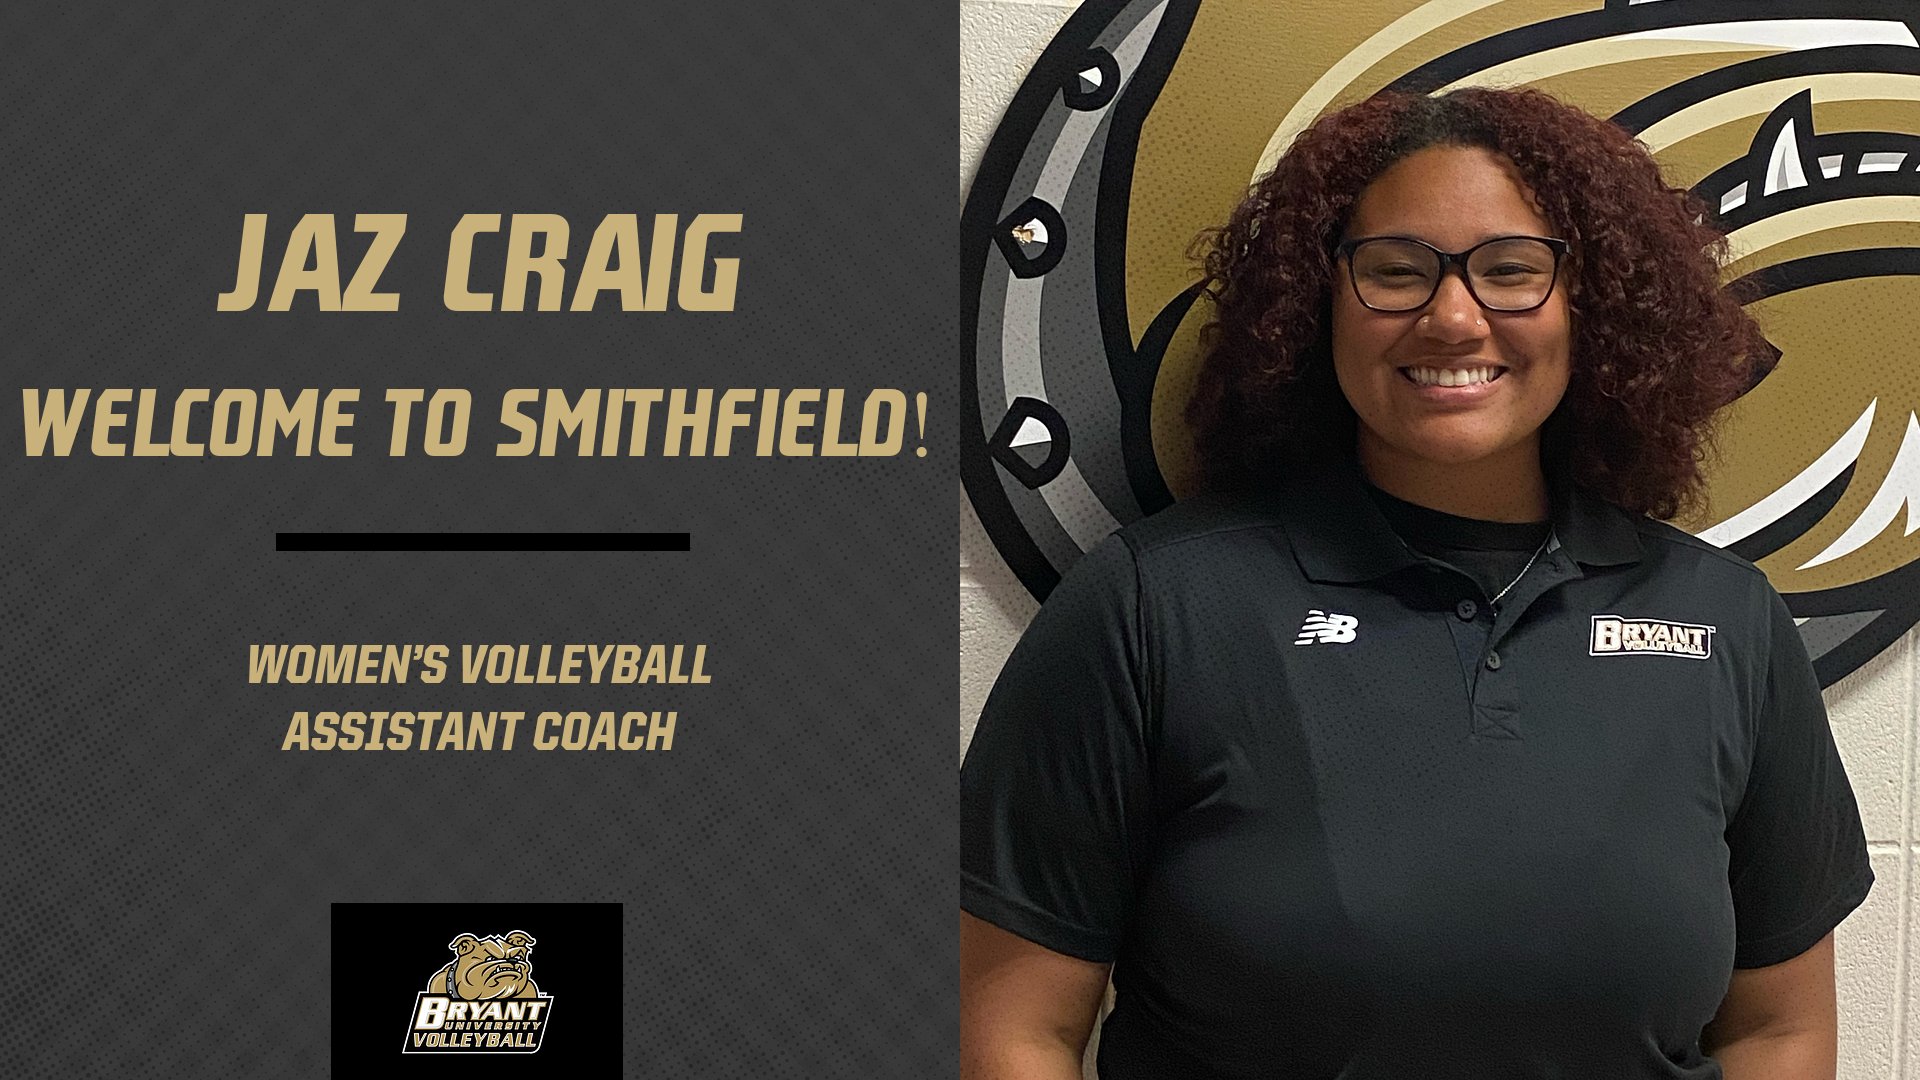 Jazmine Craig joins Bryant Volleyball staff